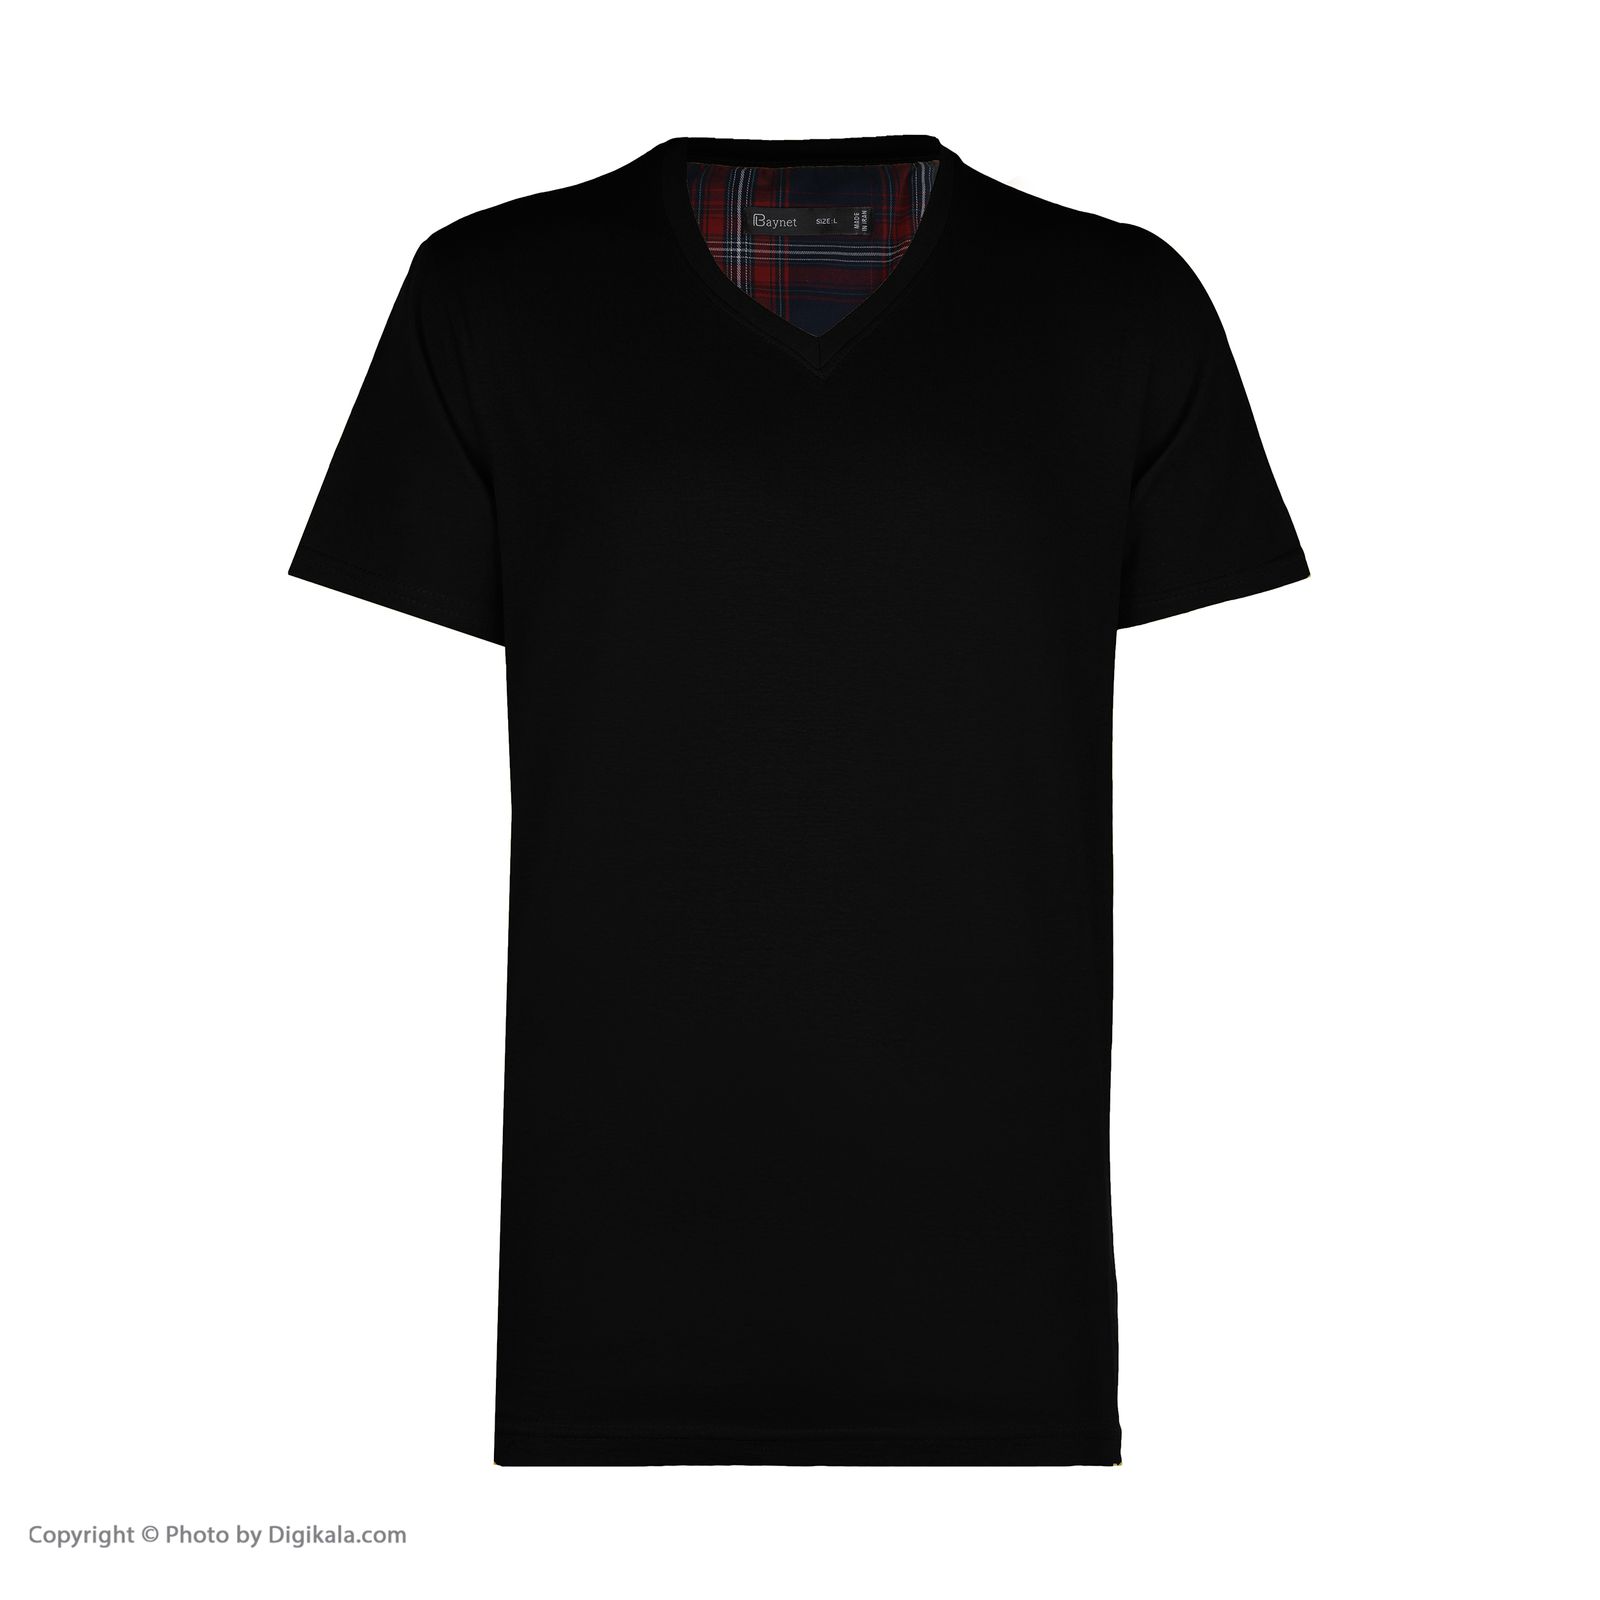 تی شرت مردانه باینت مدل 2261485-99 -  - 2